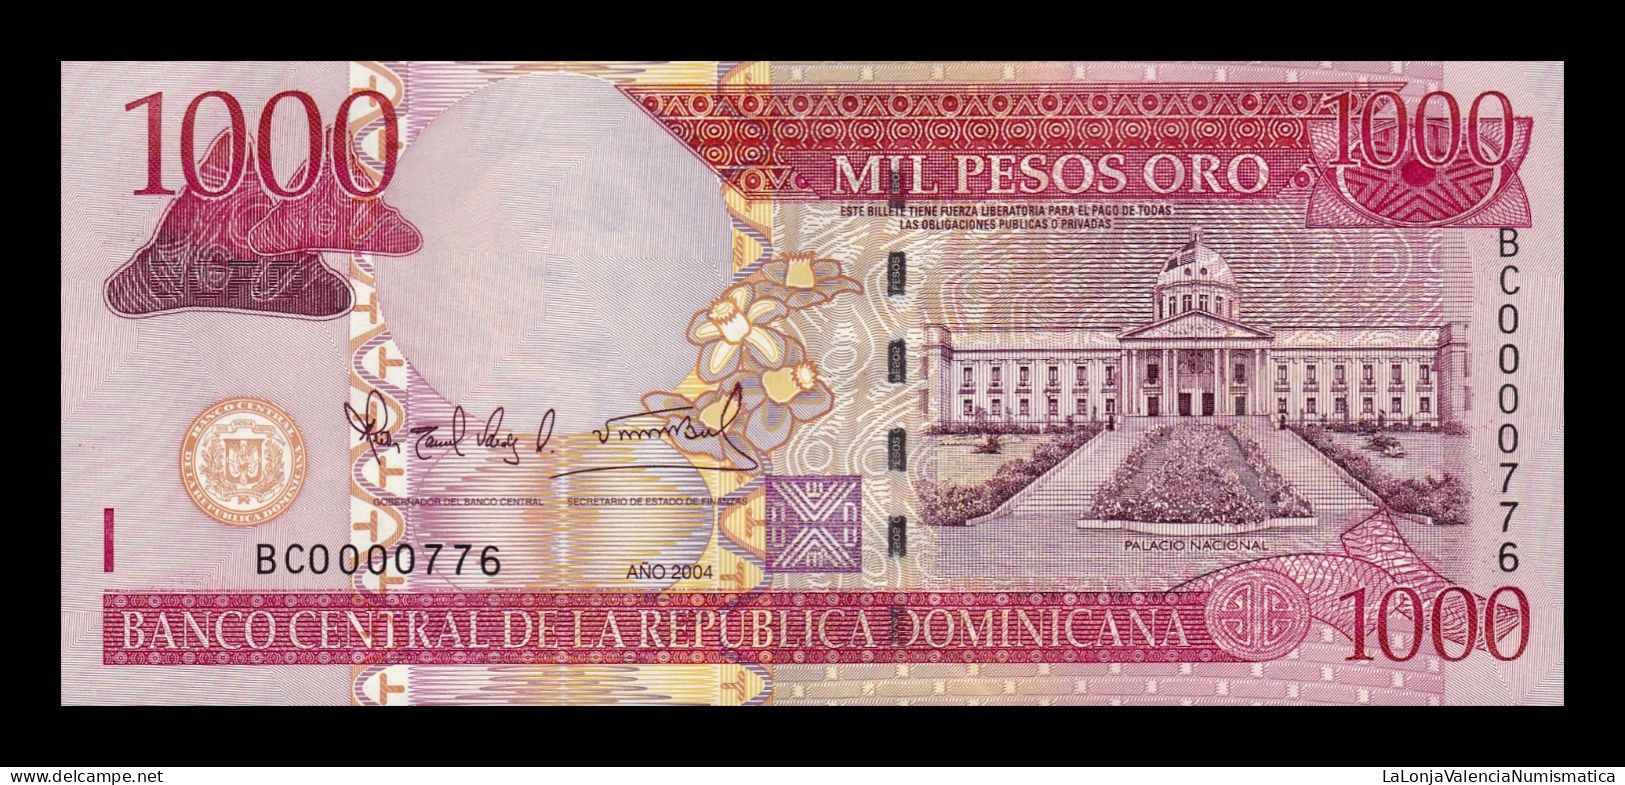 República Dominicana 1000 Pesos Oro 2004 Pick 173c Low Serial 776 Sc Unc - Dominicaine